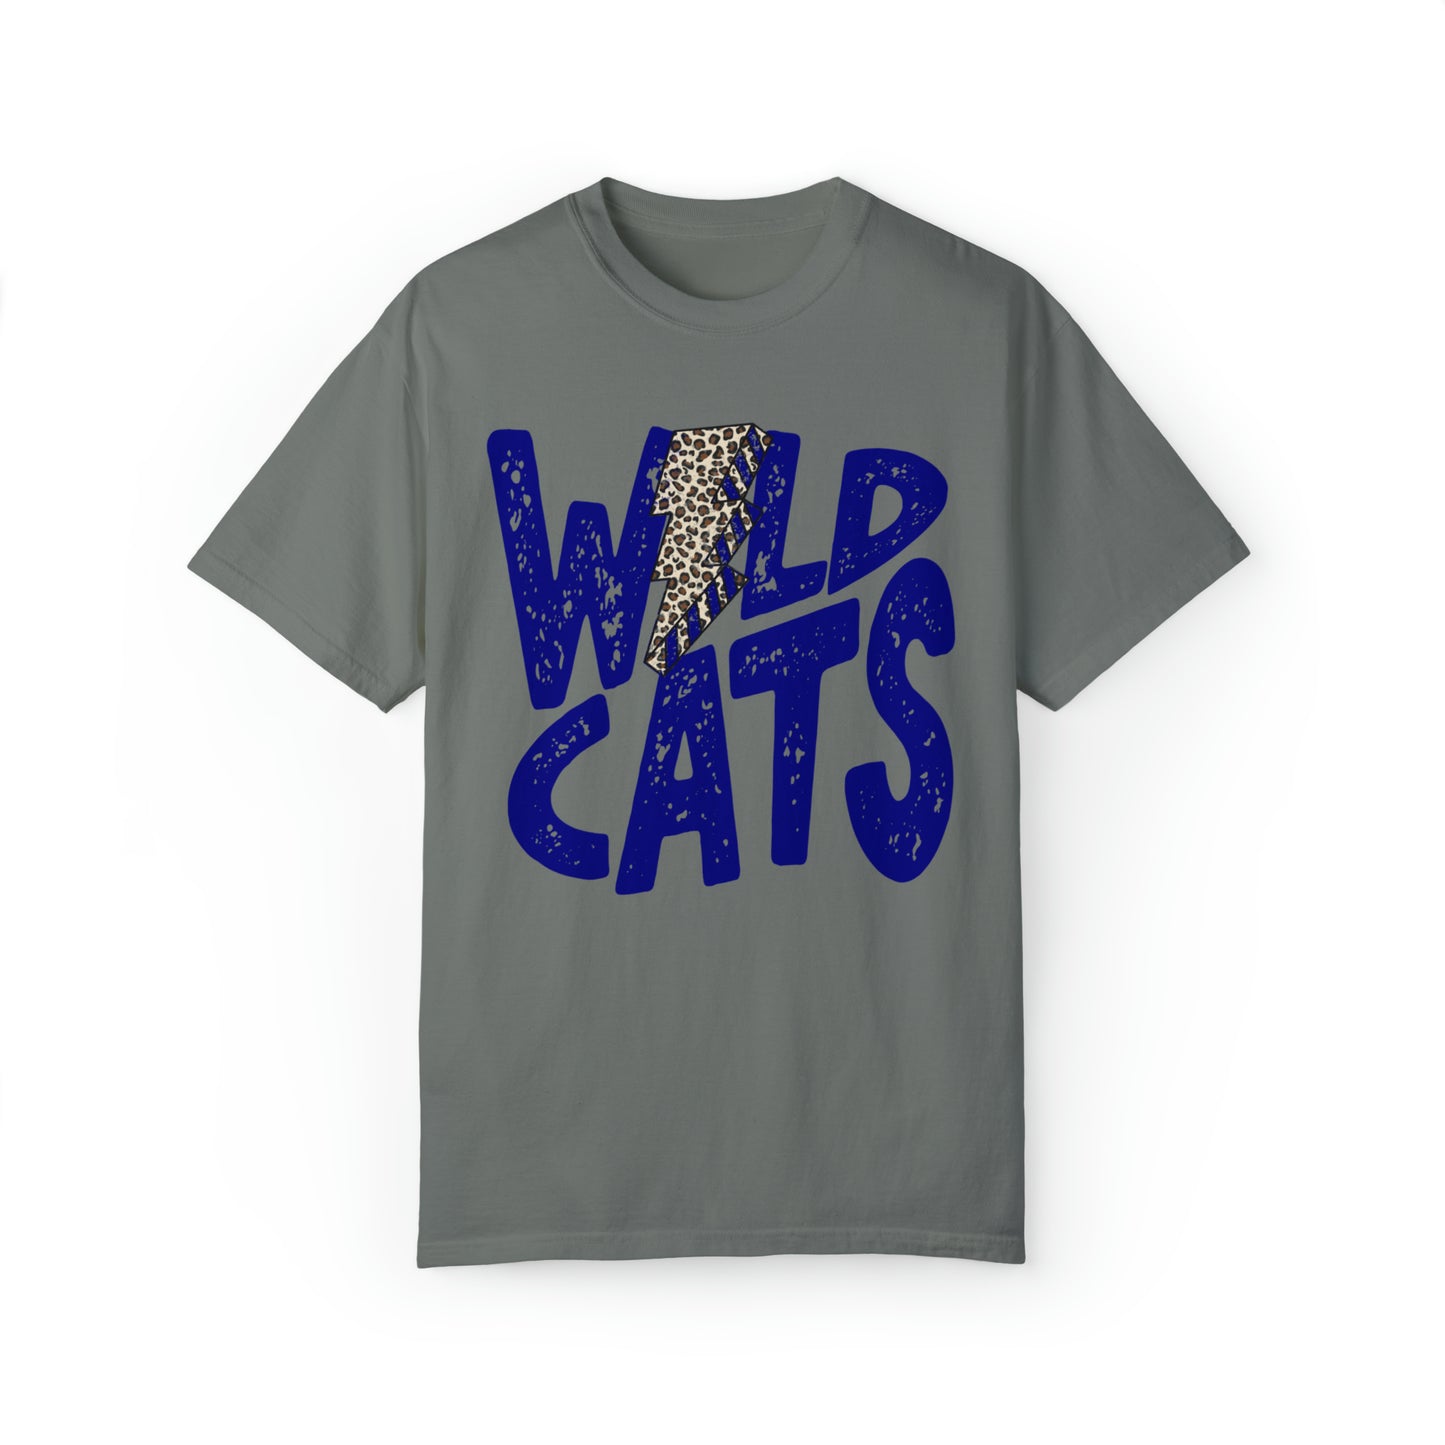 Wildcats Lightning Bolt Shirt